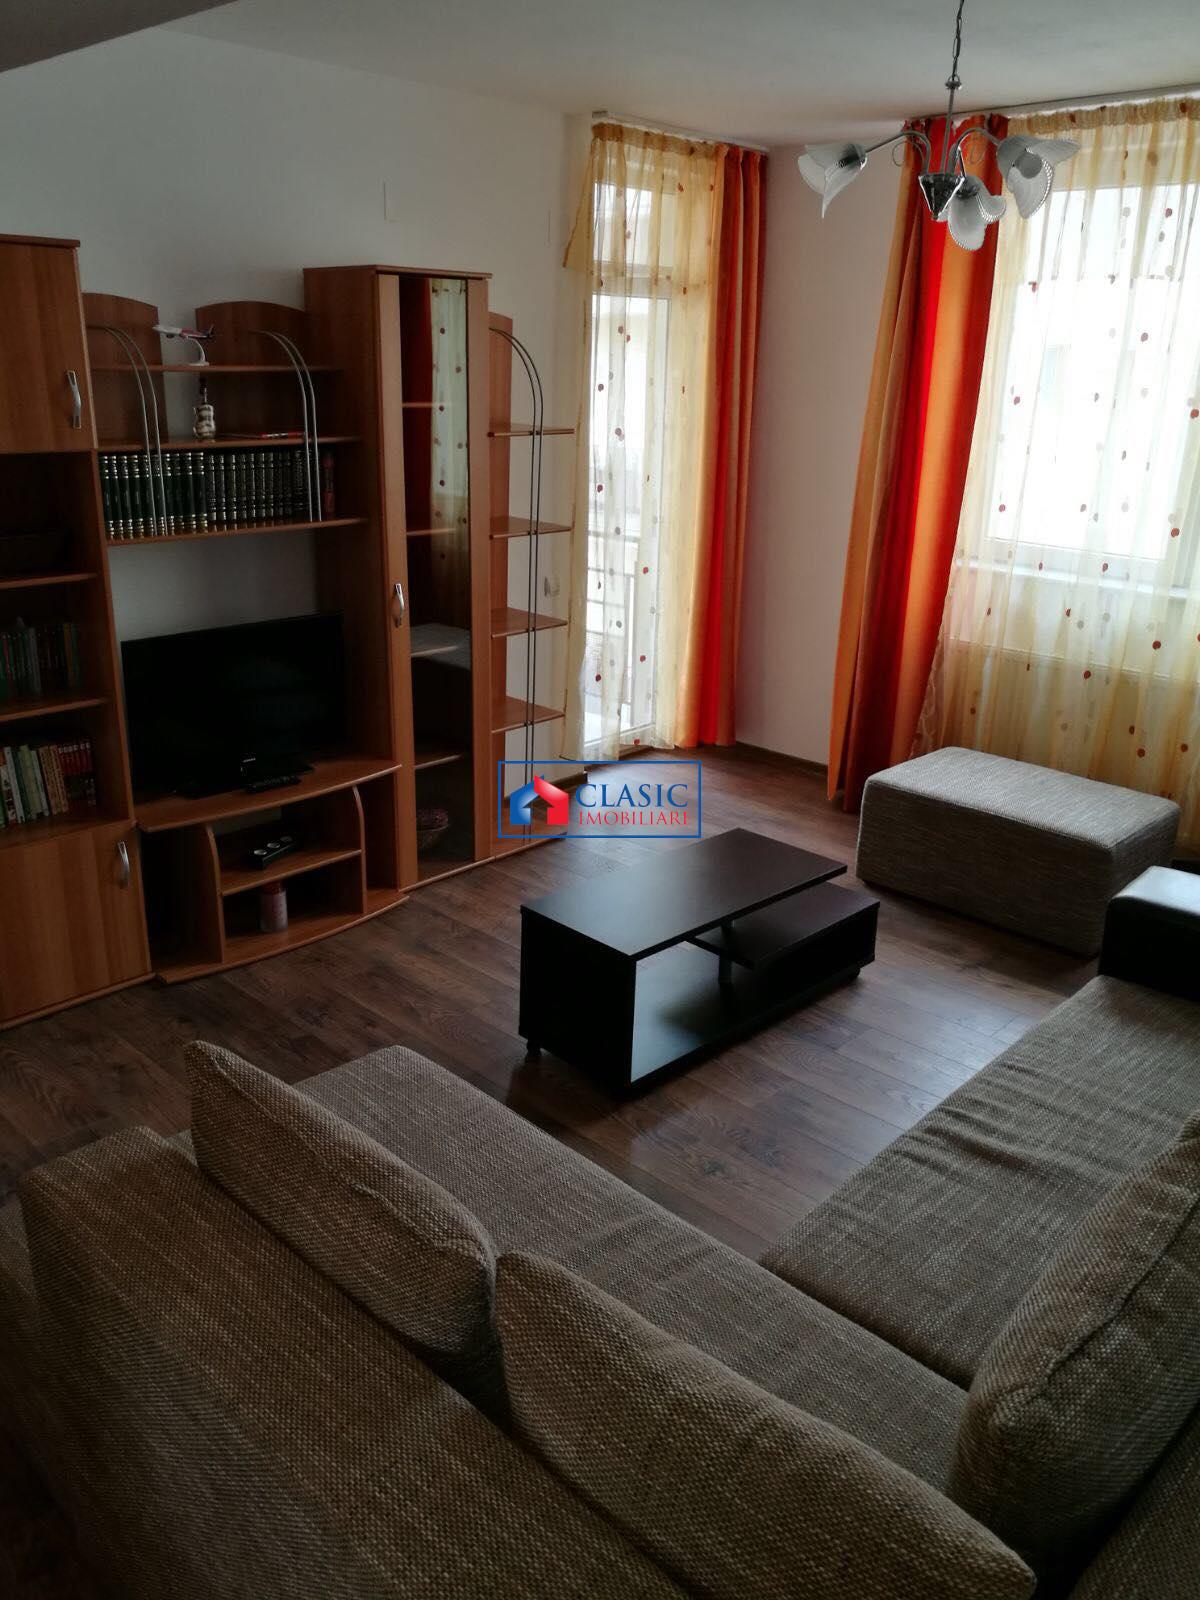 Vanzare Apartament 2 camere modern in Floresti  str Eroilor